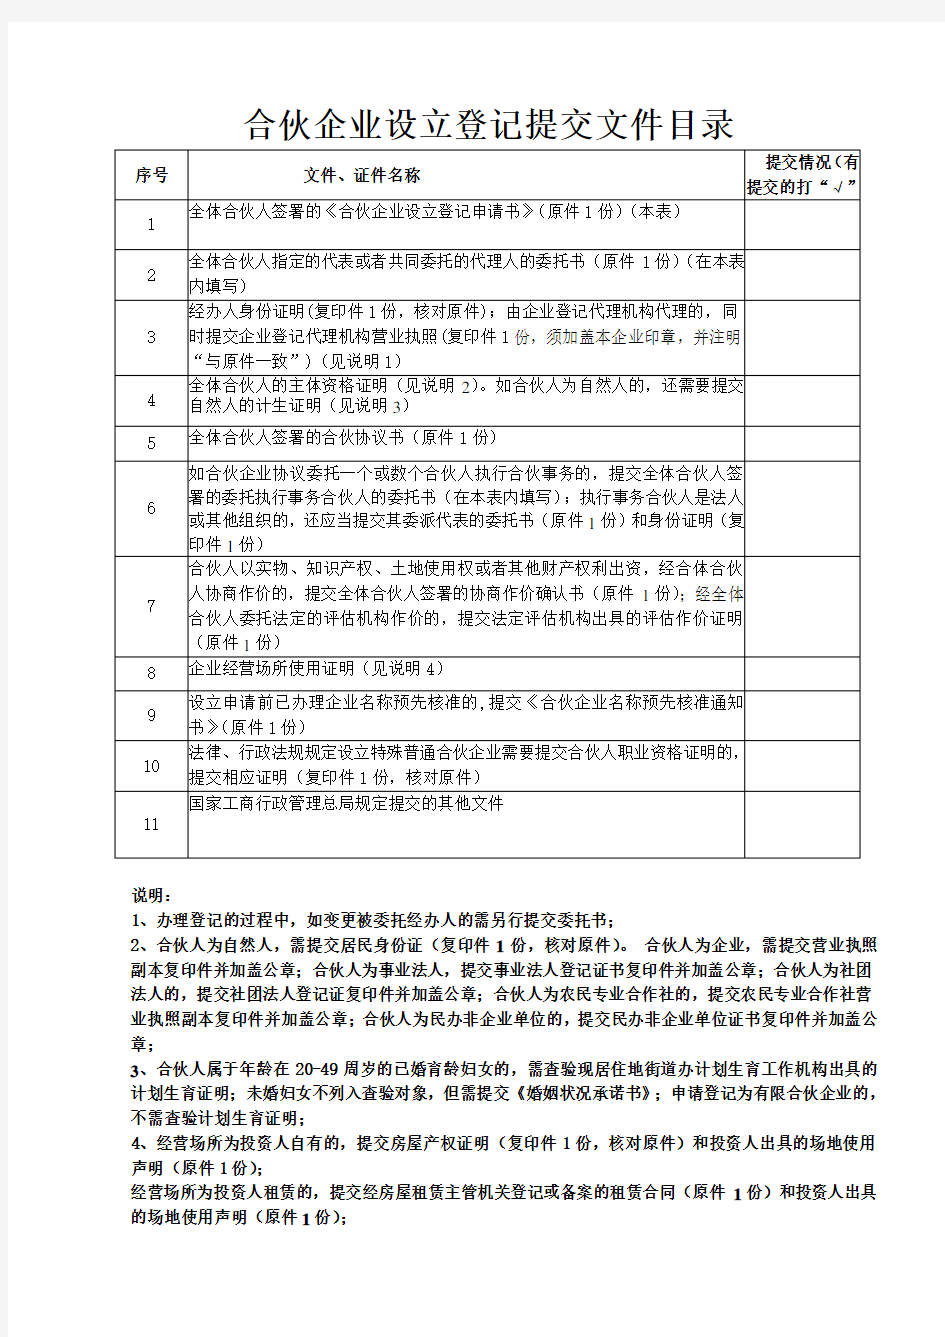 深圳合伙企业注册流程